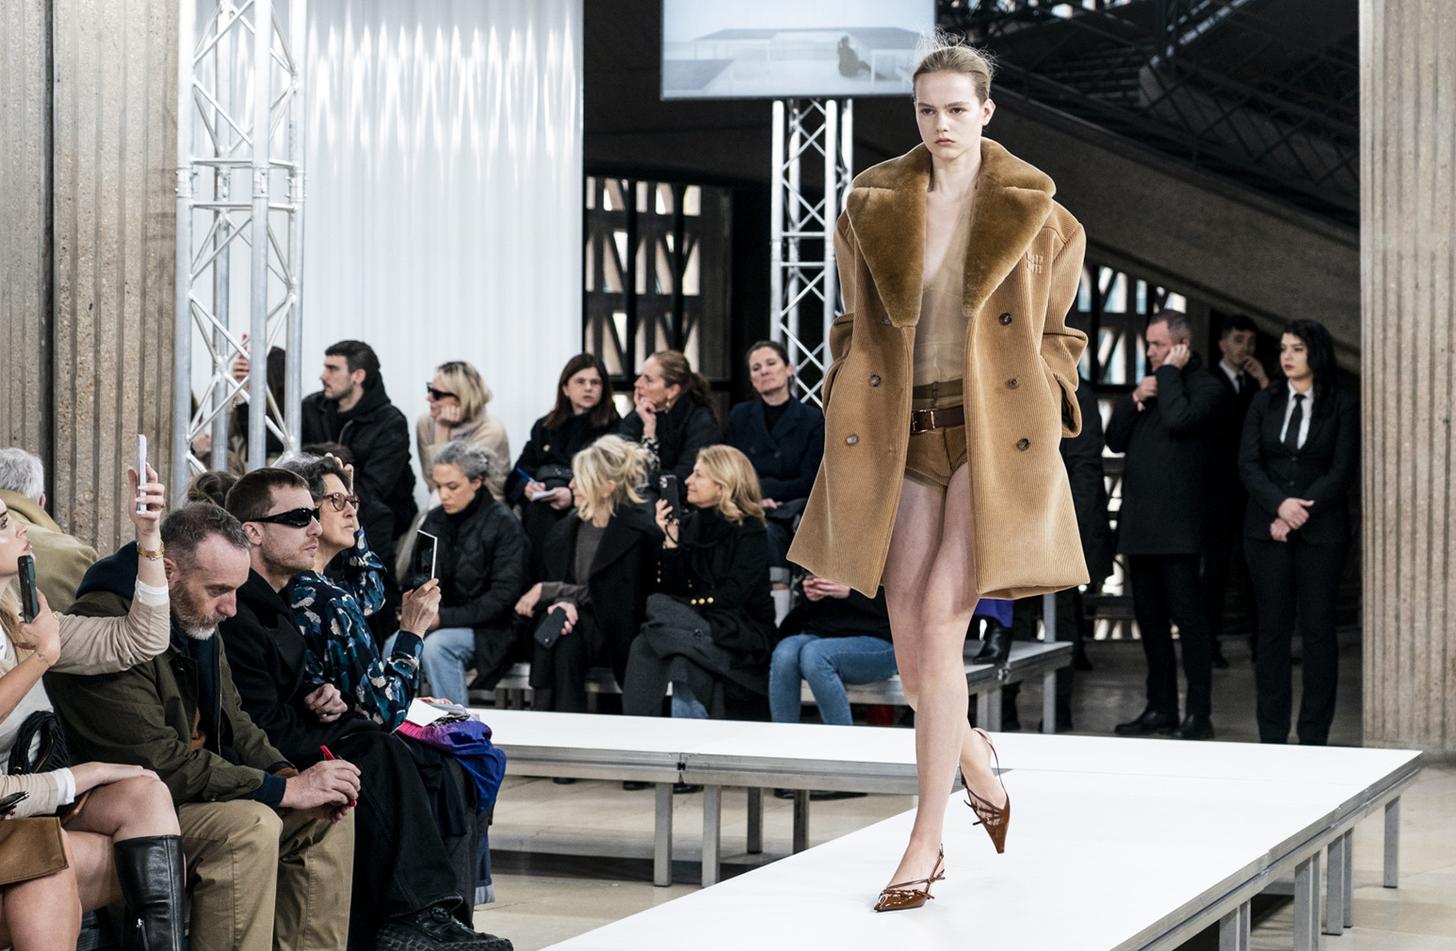 Louis Vuitton - Wool-Silk Jogging Trousers - Camel - Women - Size: S - Luxury